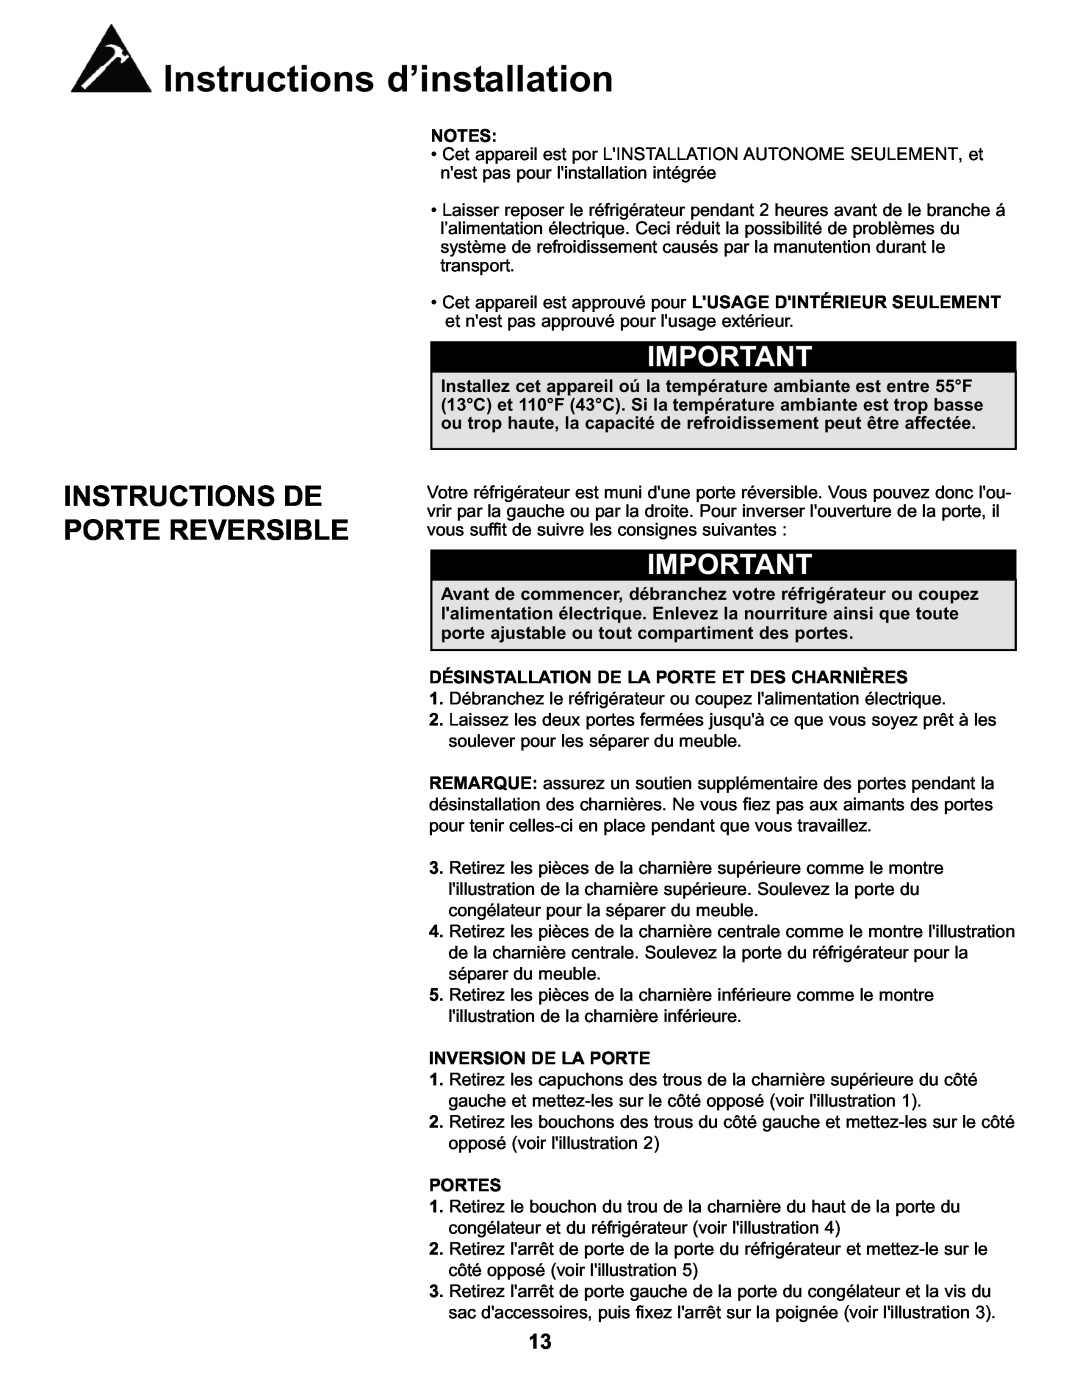 Danby DFF282SLDB Instructions De Porte Reversible, Désinstallation De La Porte Et Des Charnières, Inversion De La Porte 